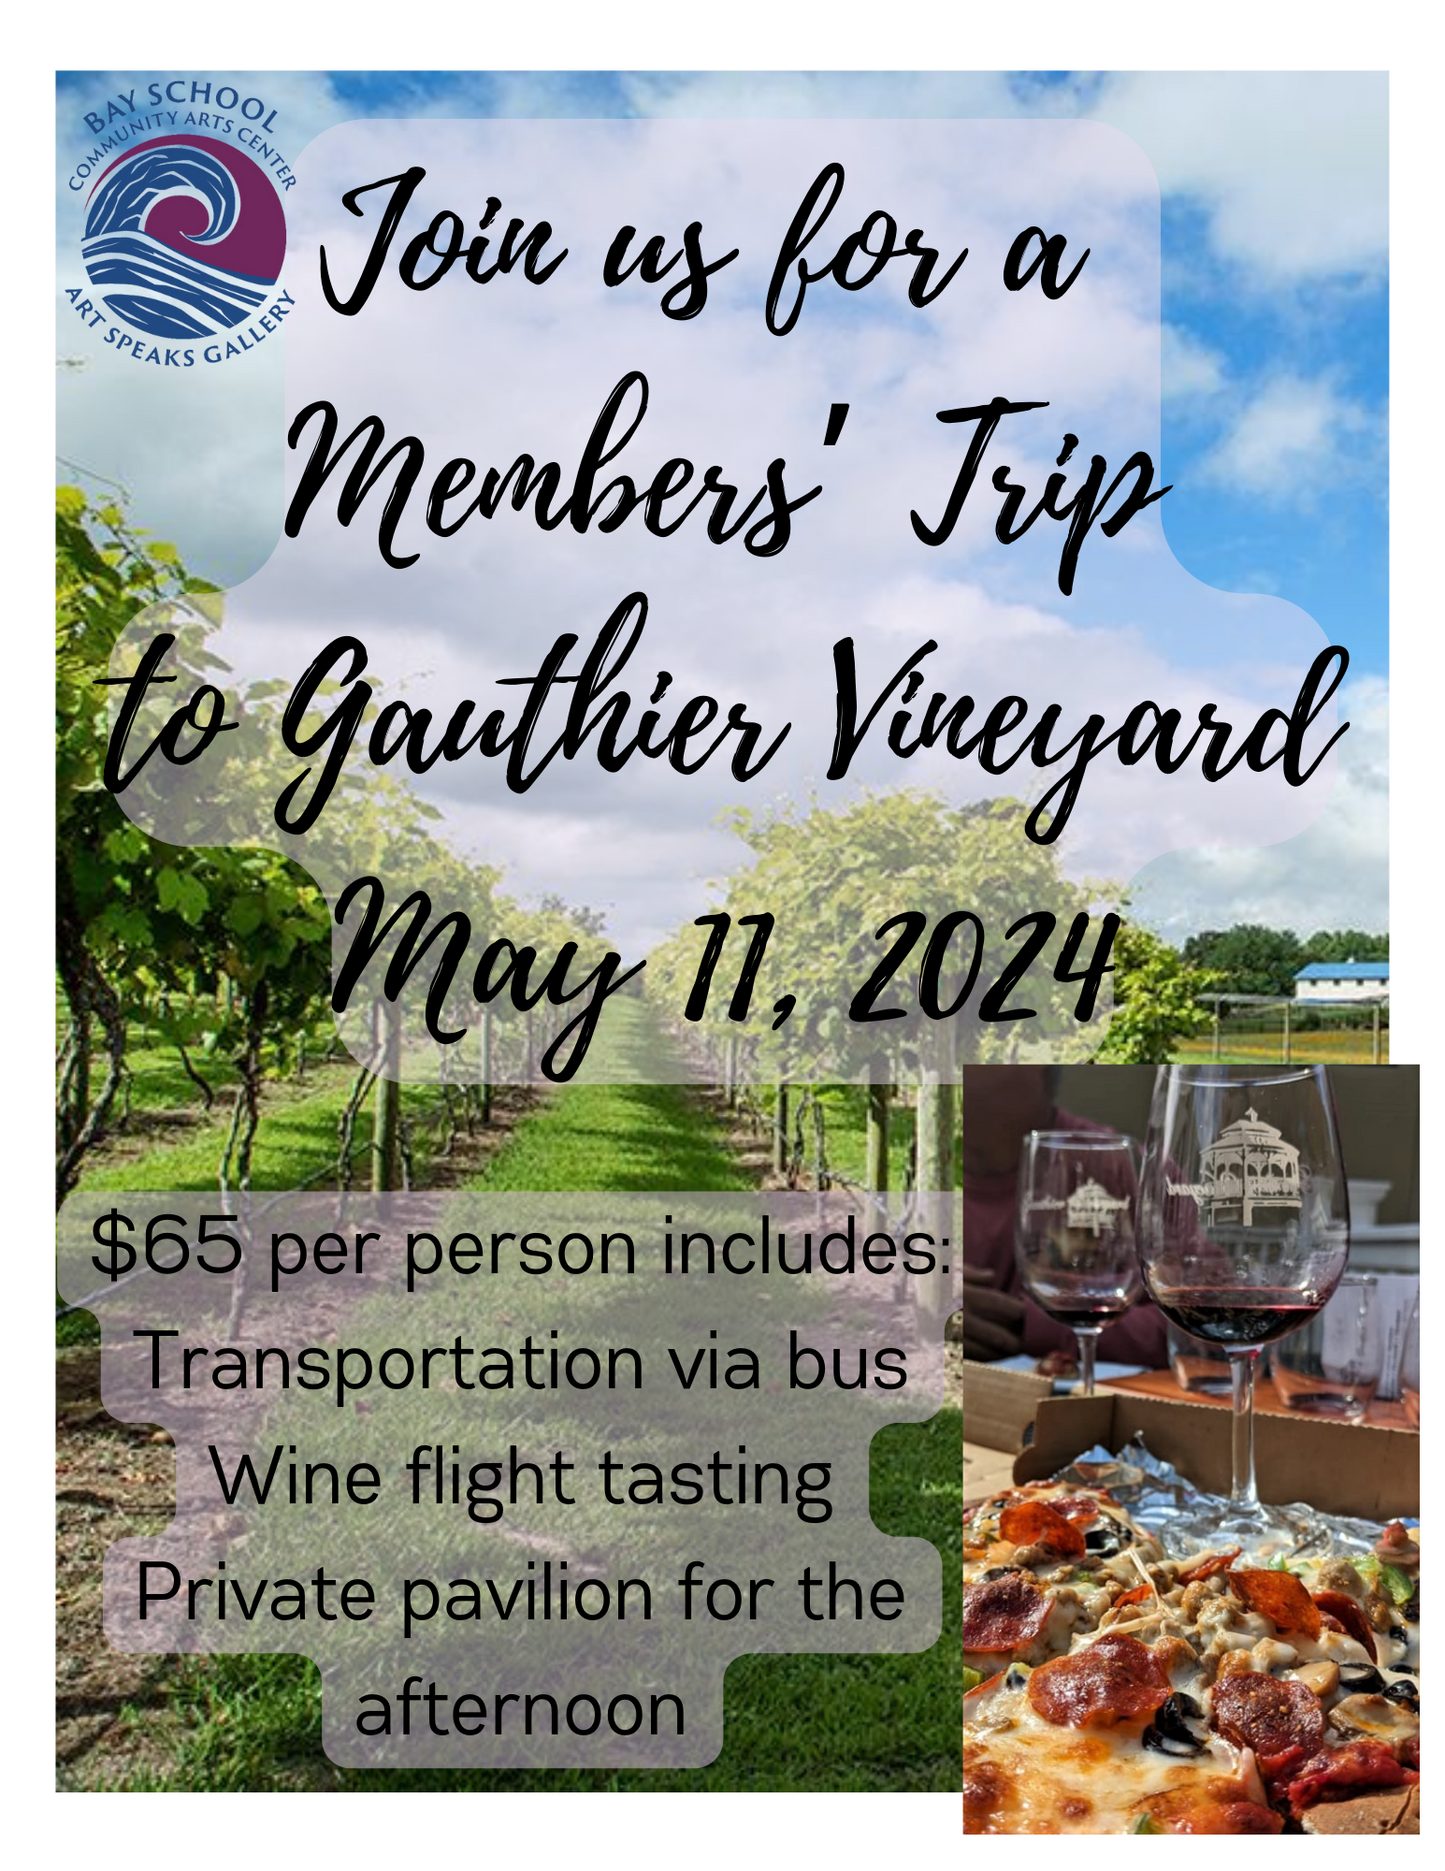 Members' Trip to Gauthier Vineyard